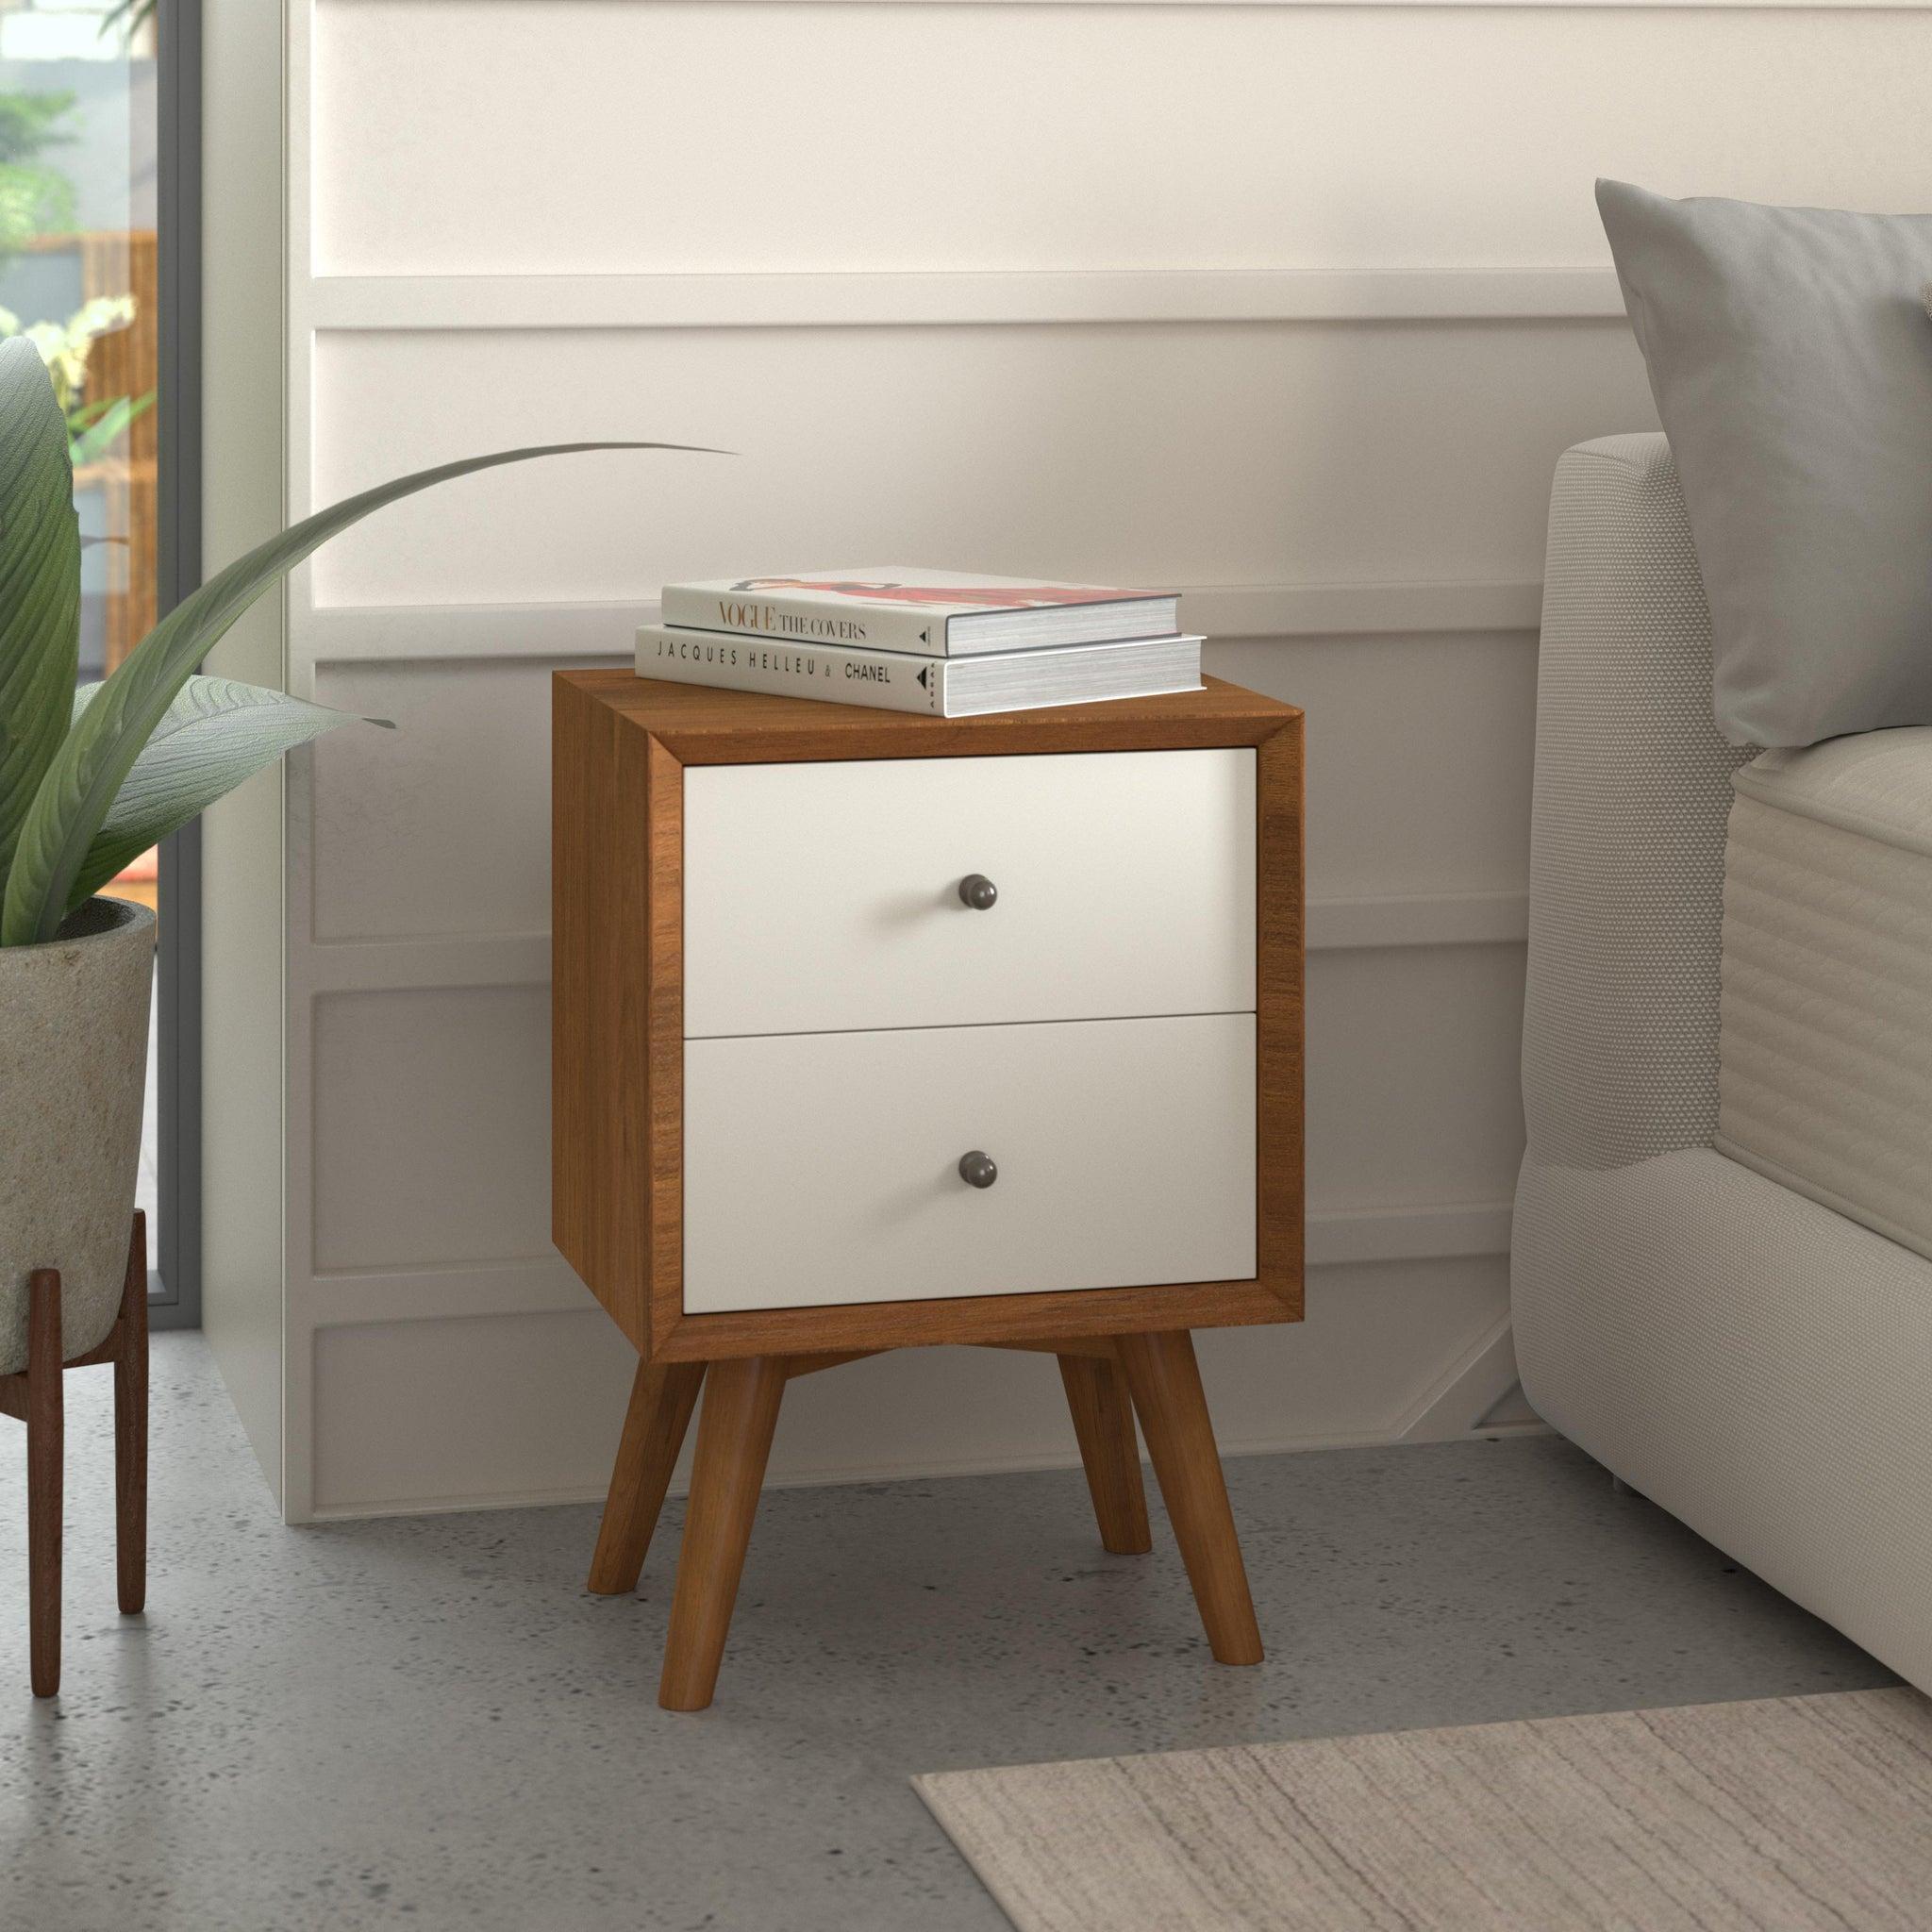 

        
Alpine Furniture SOPHIA/FLYNN Platform Bedroom Set Brown Faux Leather 840108500527
